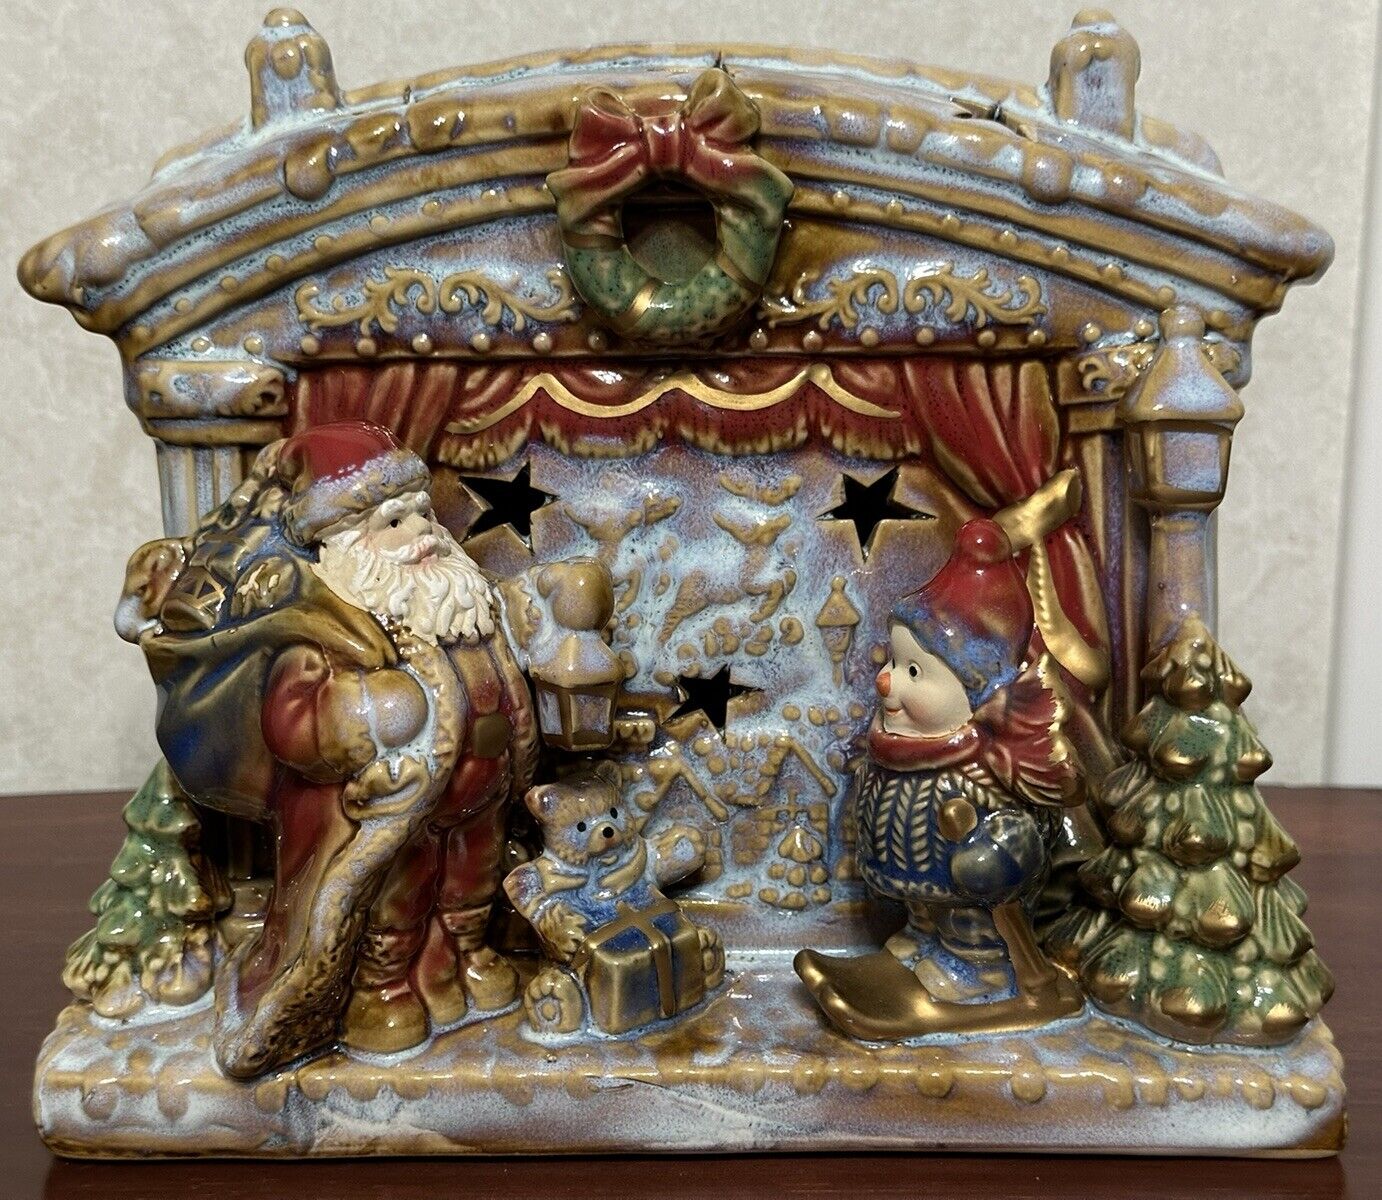 Elements Santa Claus & Snowman Fireplace Porcelain Figurine Statue Decor Piece